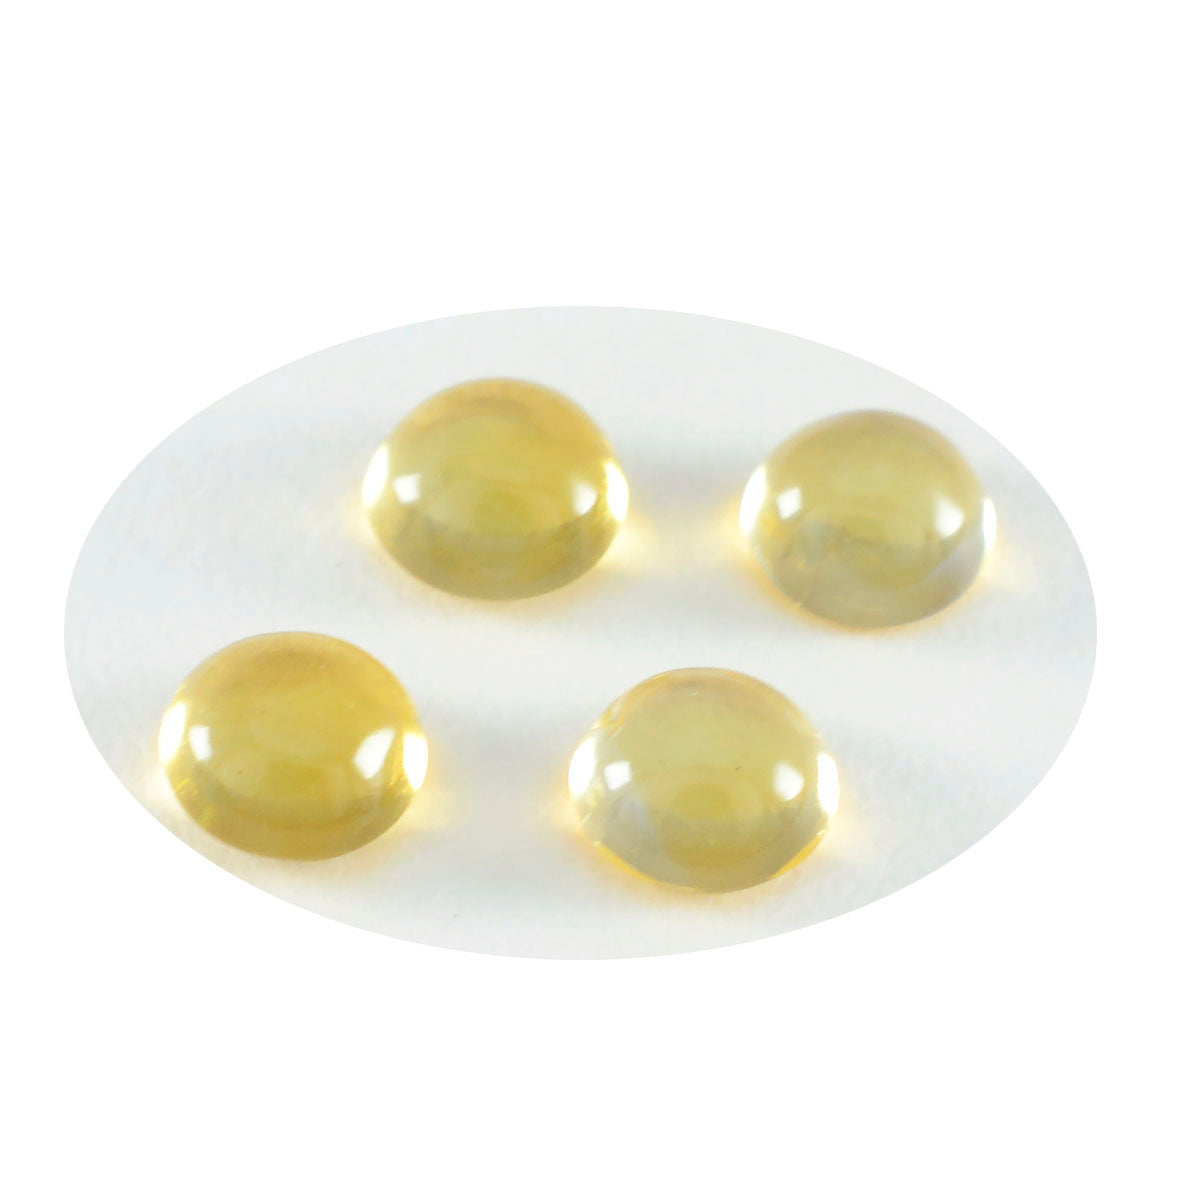 Riyogems 1pc cabochon citrine jaune 11x11mm forme ronde beauté qualité pierre précieuse en vrac